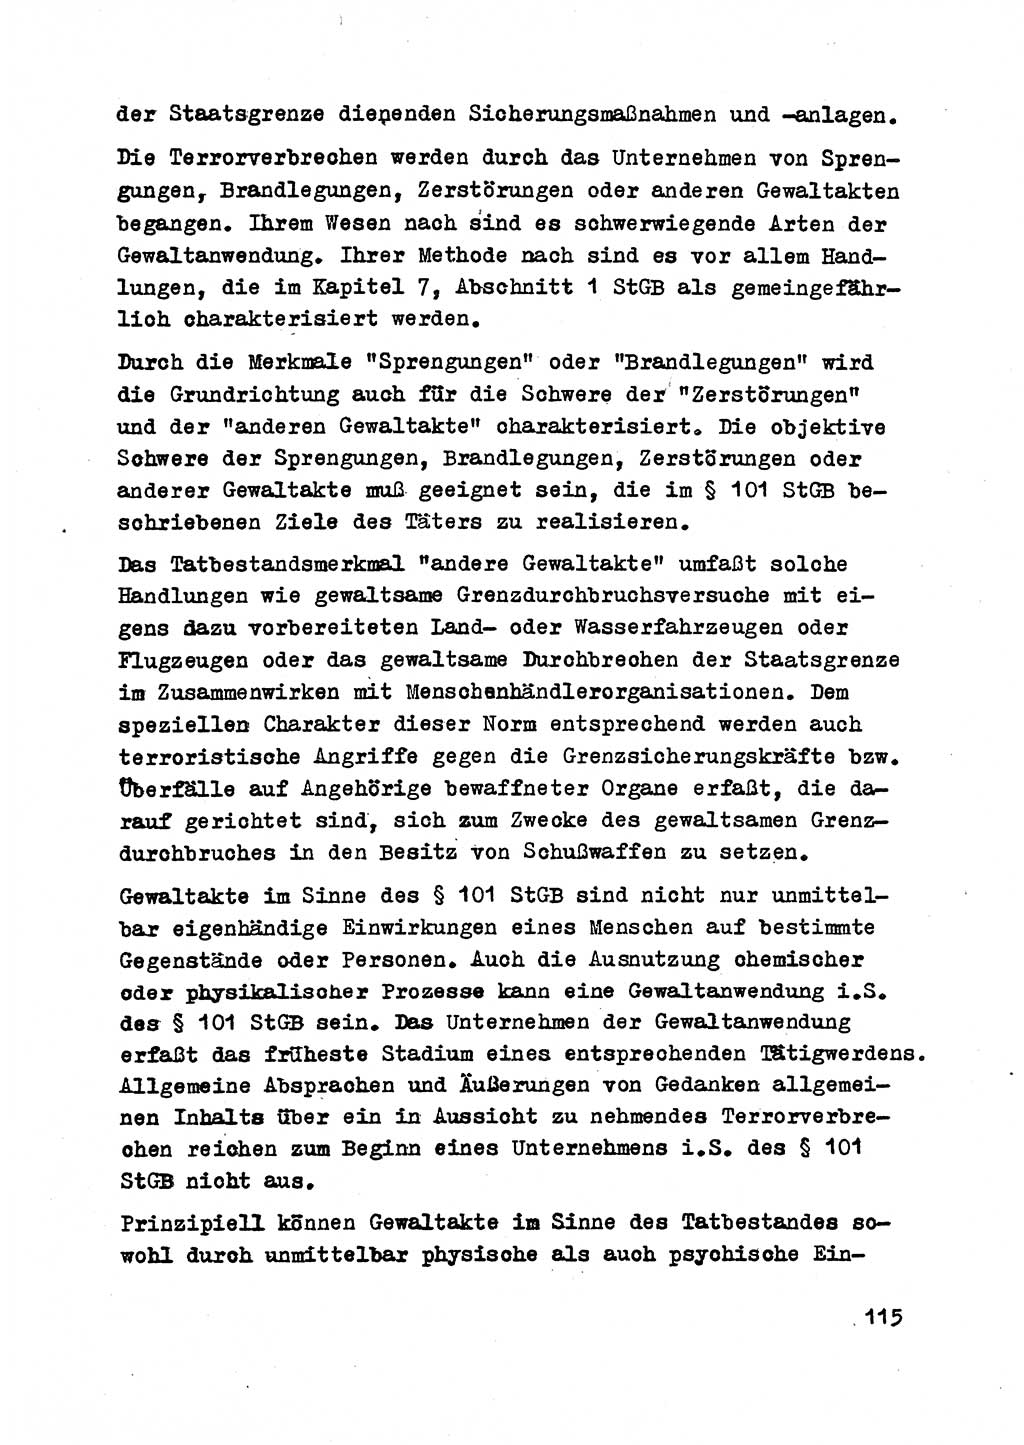 Strafrecht der DDR (Deutsche Demokratische Republik), Besonderer Teil, Lehrmaterial, Heft 2 1969, Seite 115 (Strafr. DDR BT Lehrmat. H. 2 1969, S. 115)